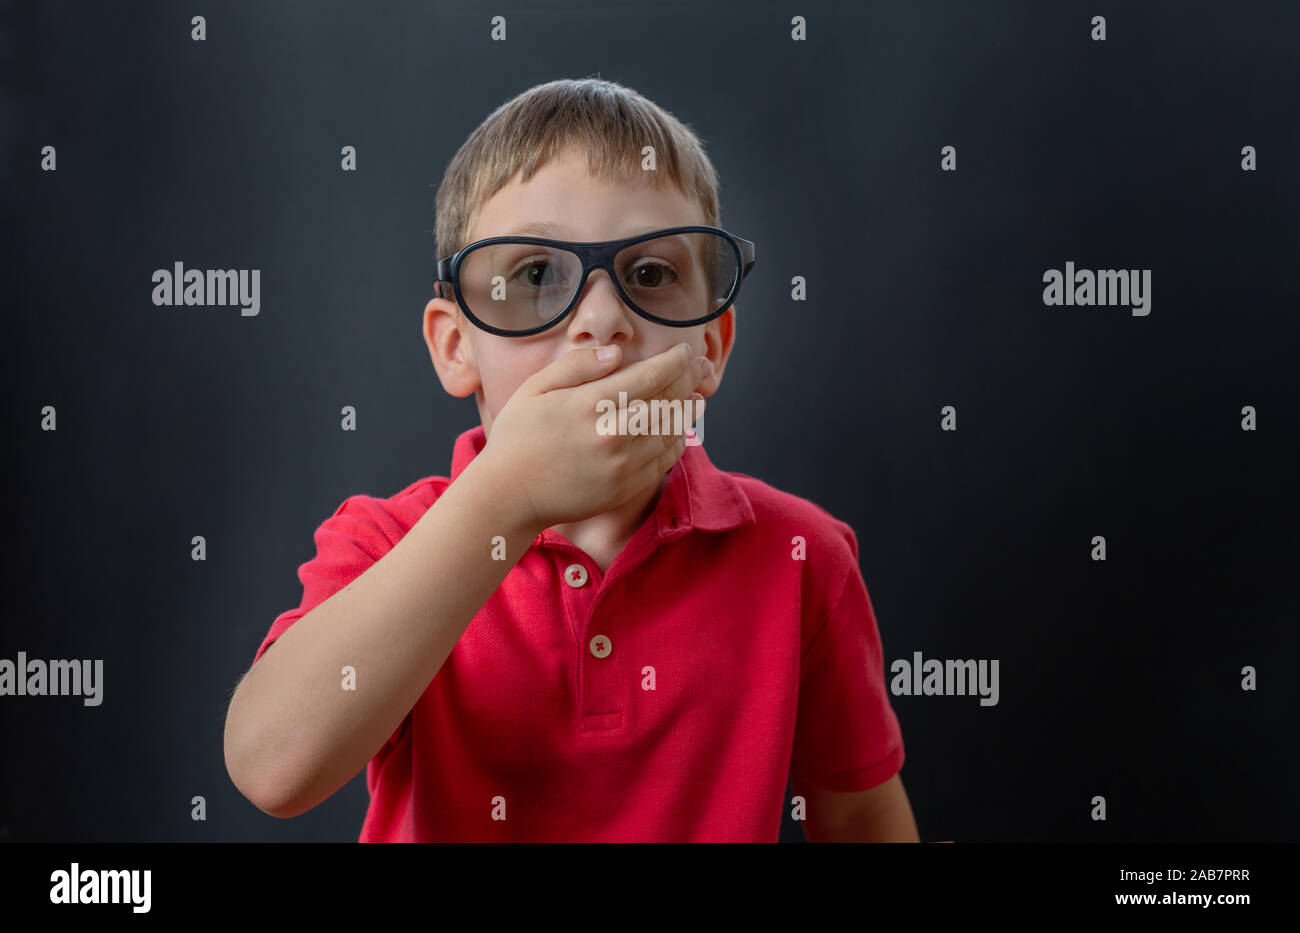 El muchacho está ansiosamente viendo una película con gafas 3d. Él sostiene su mano á su boca y mira sorprendida. Foto de stock